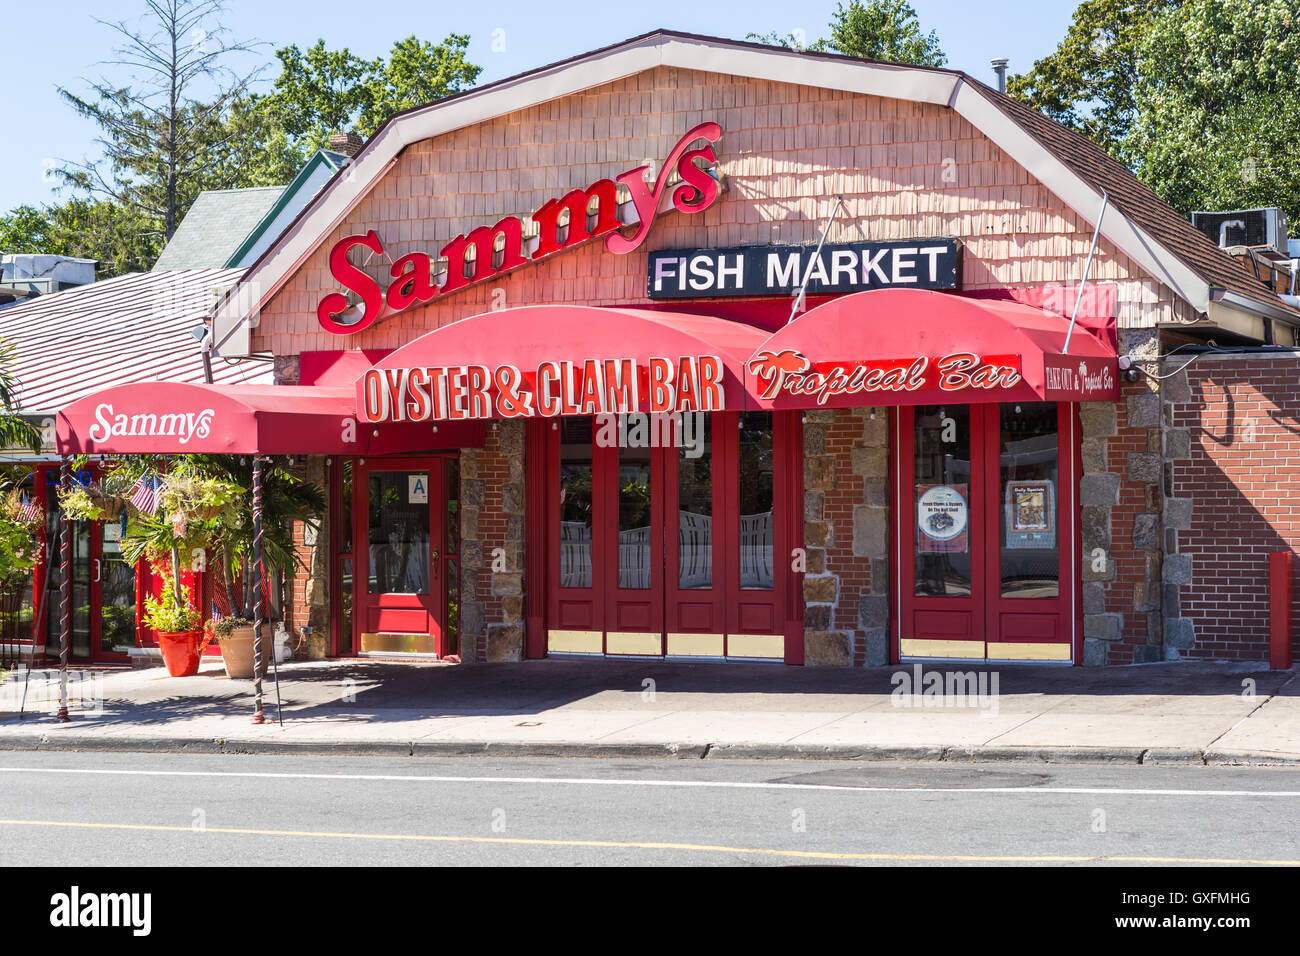 La Oyster & Clam bar e bar tropicale a Sammy pesce della scatola, un ristorante di pesce in città isola nel Bronx, New York City. Foto Stock